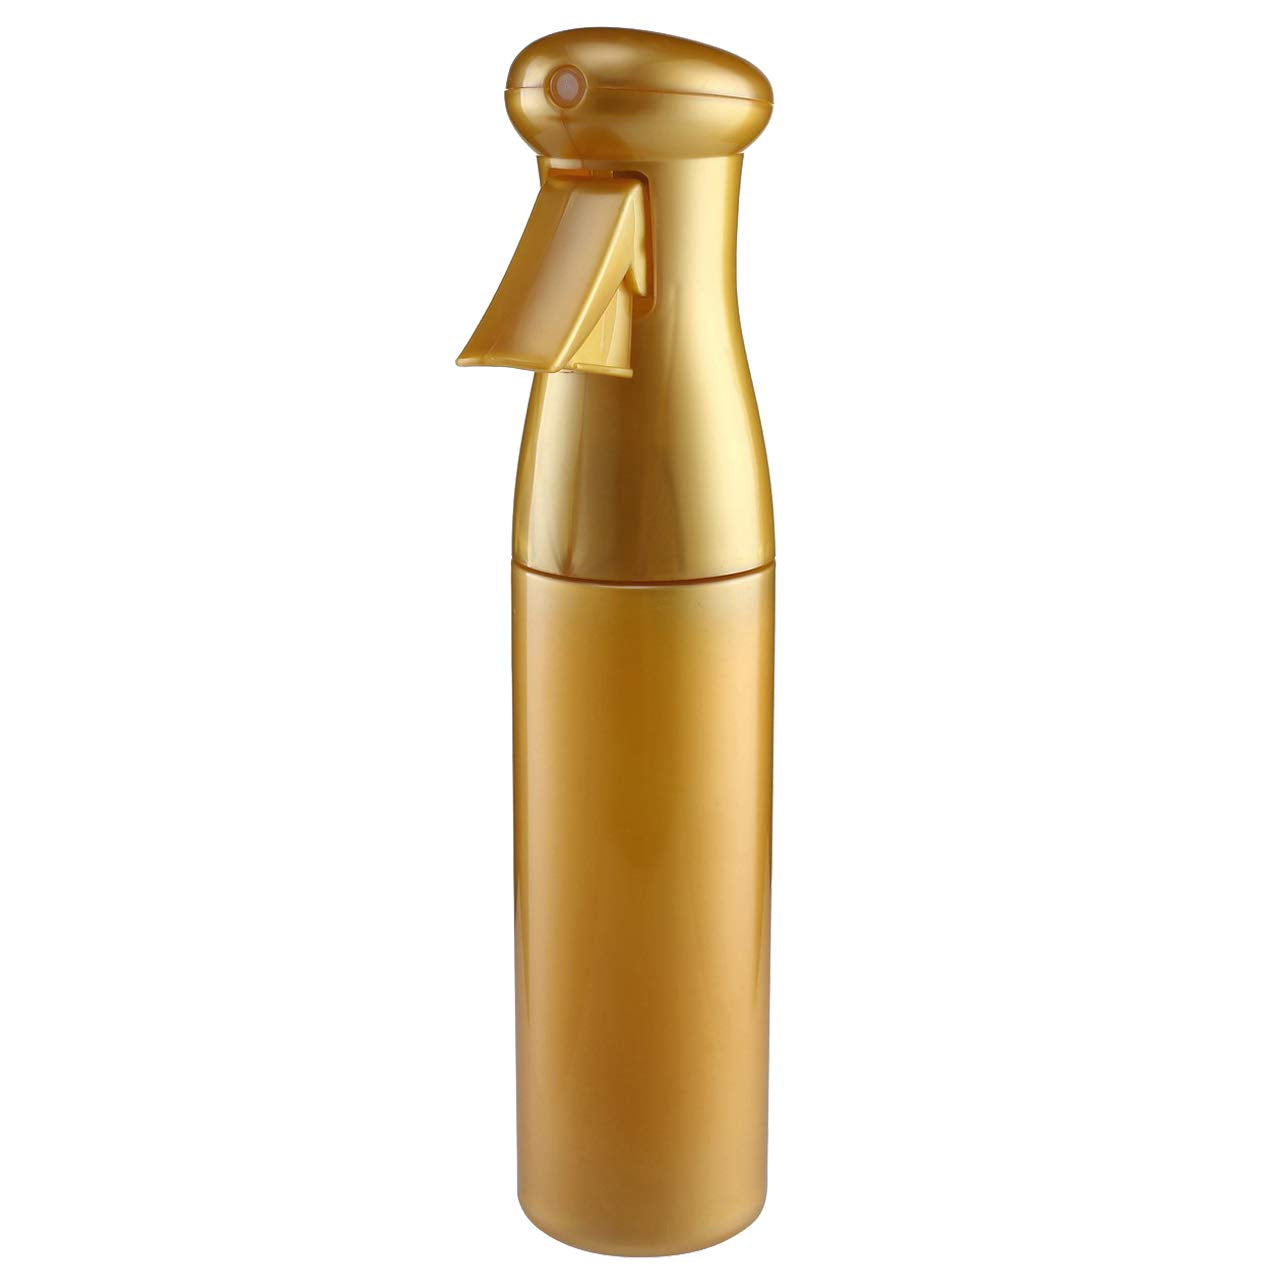 Mist spray bottle [gold color]